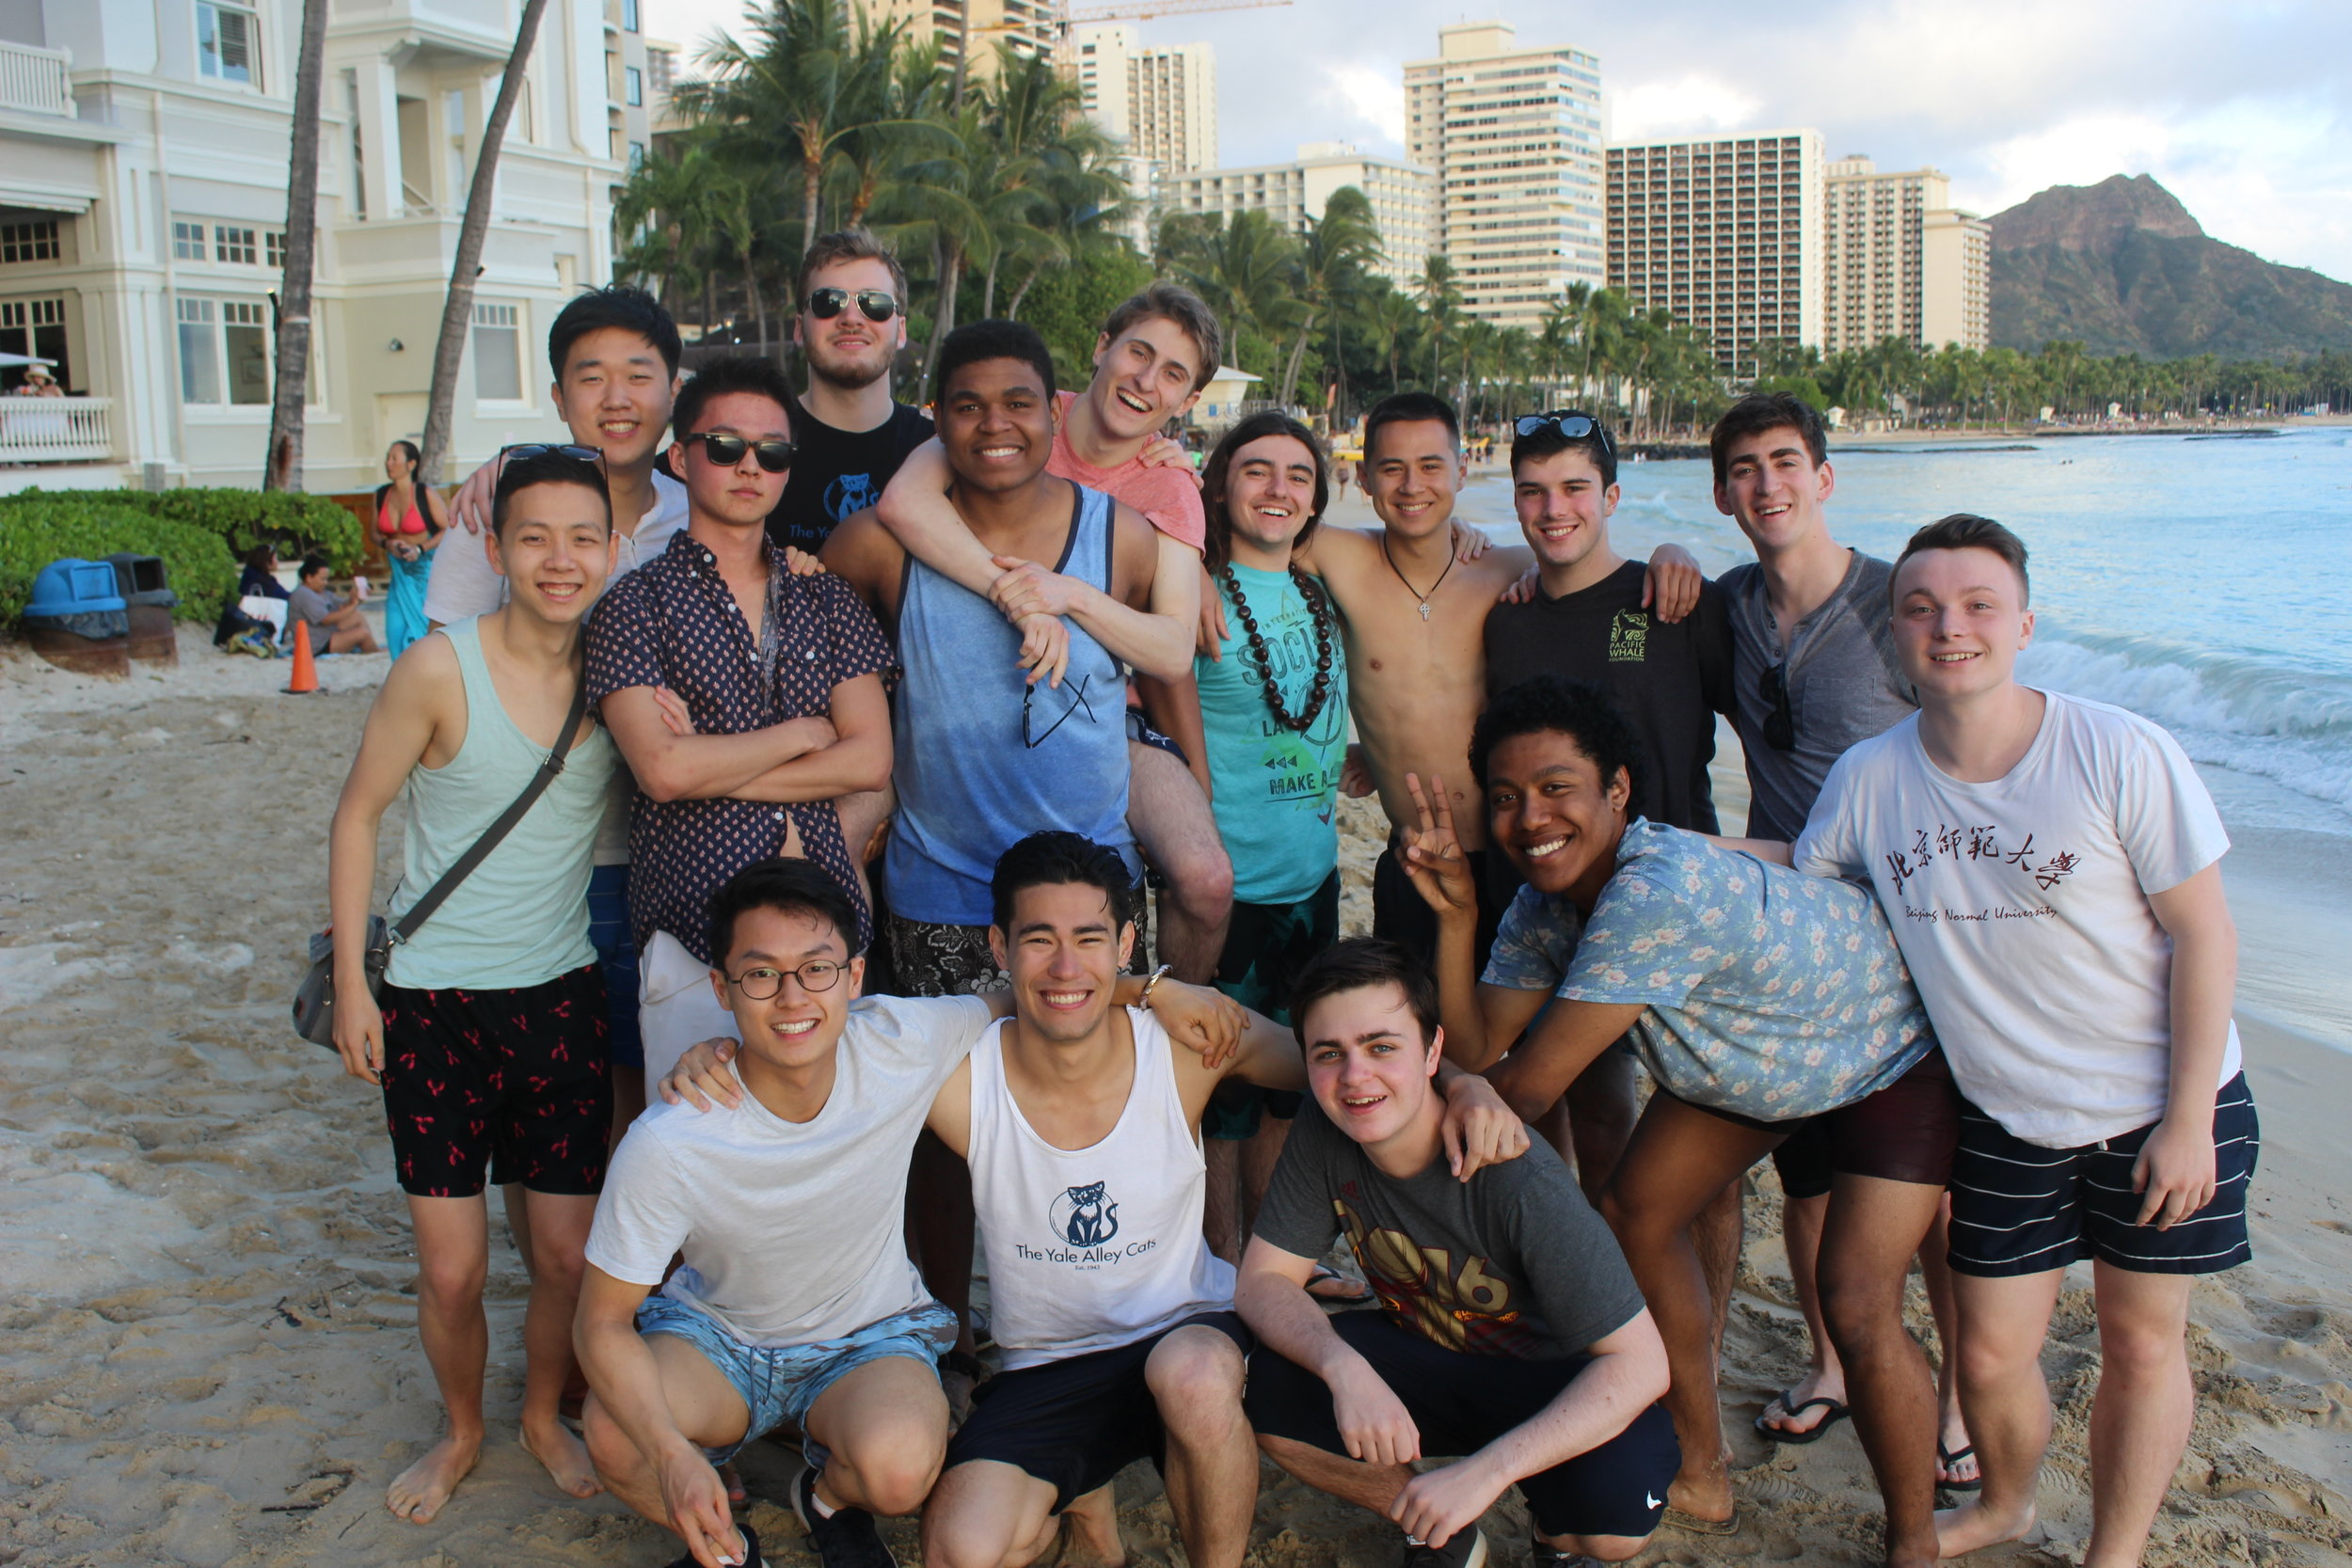  Group photo on Waikiki Beach in Honolulu 